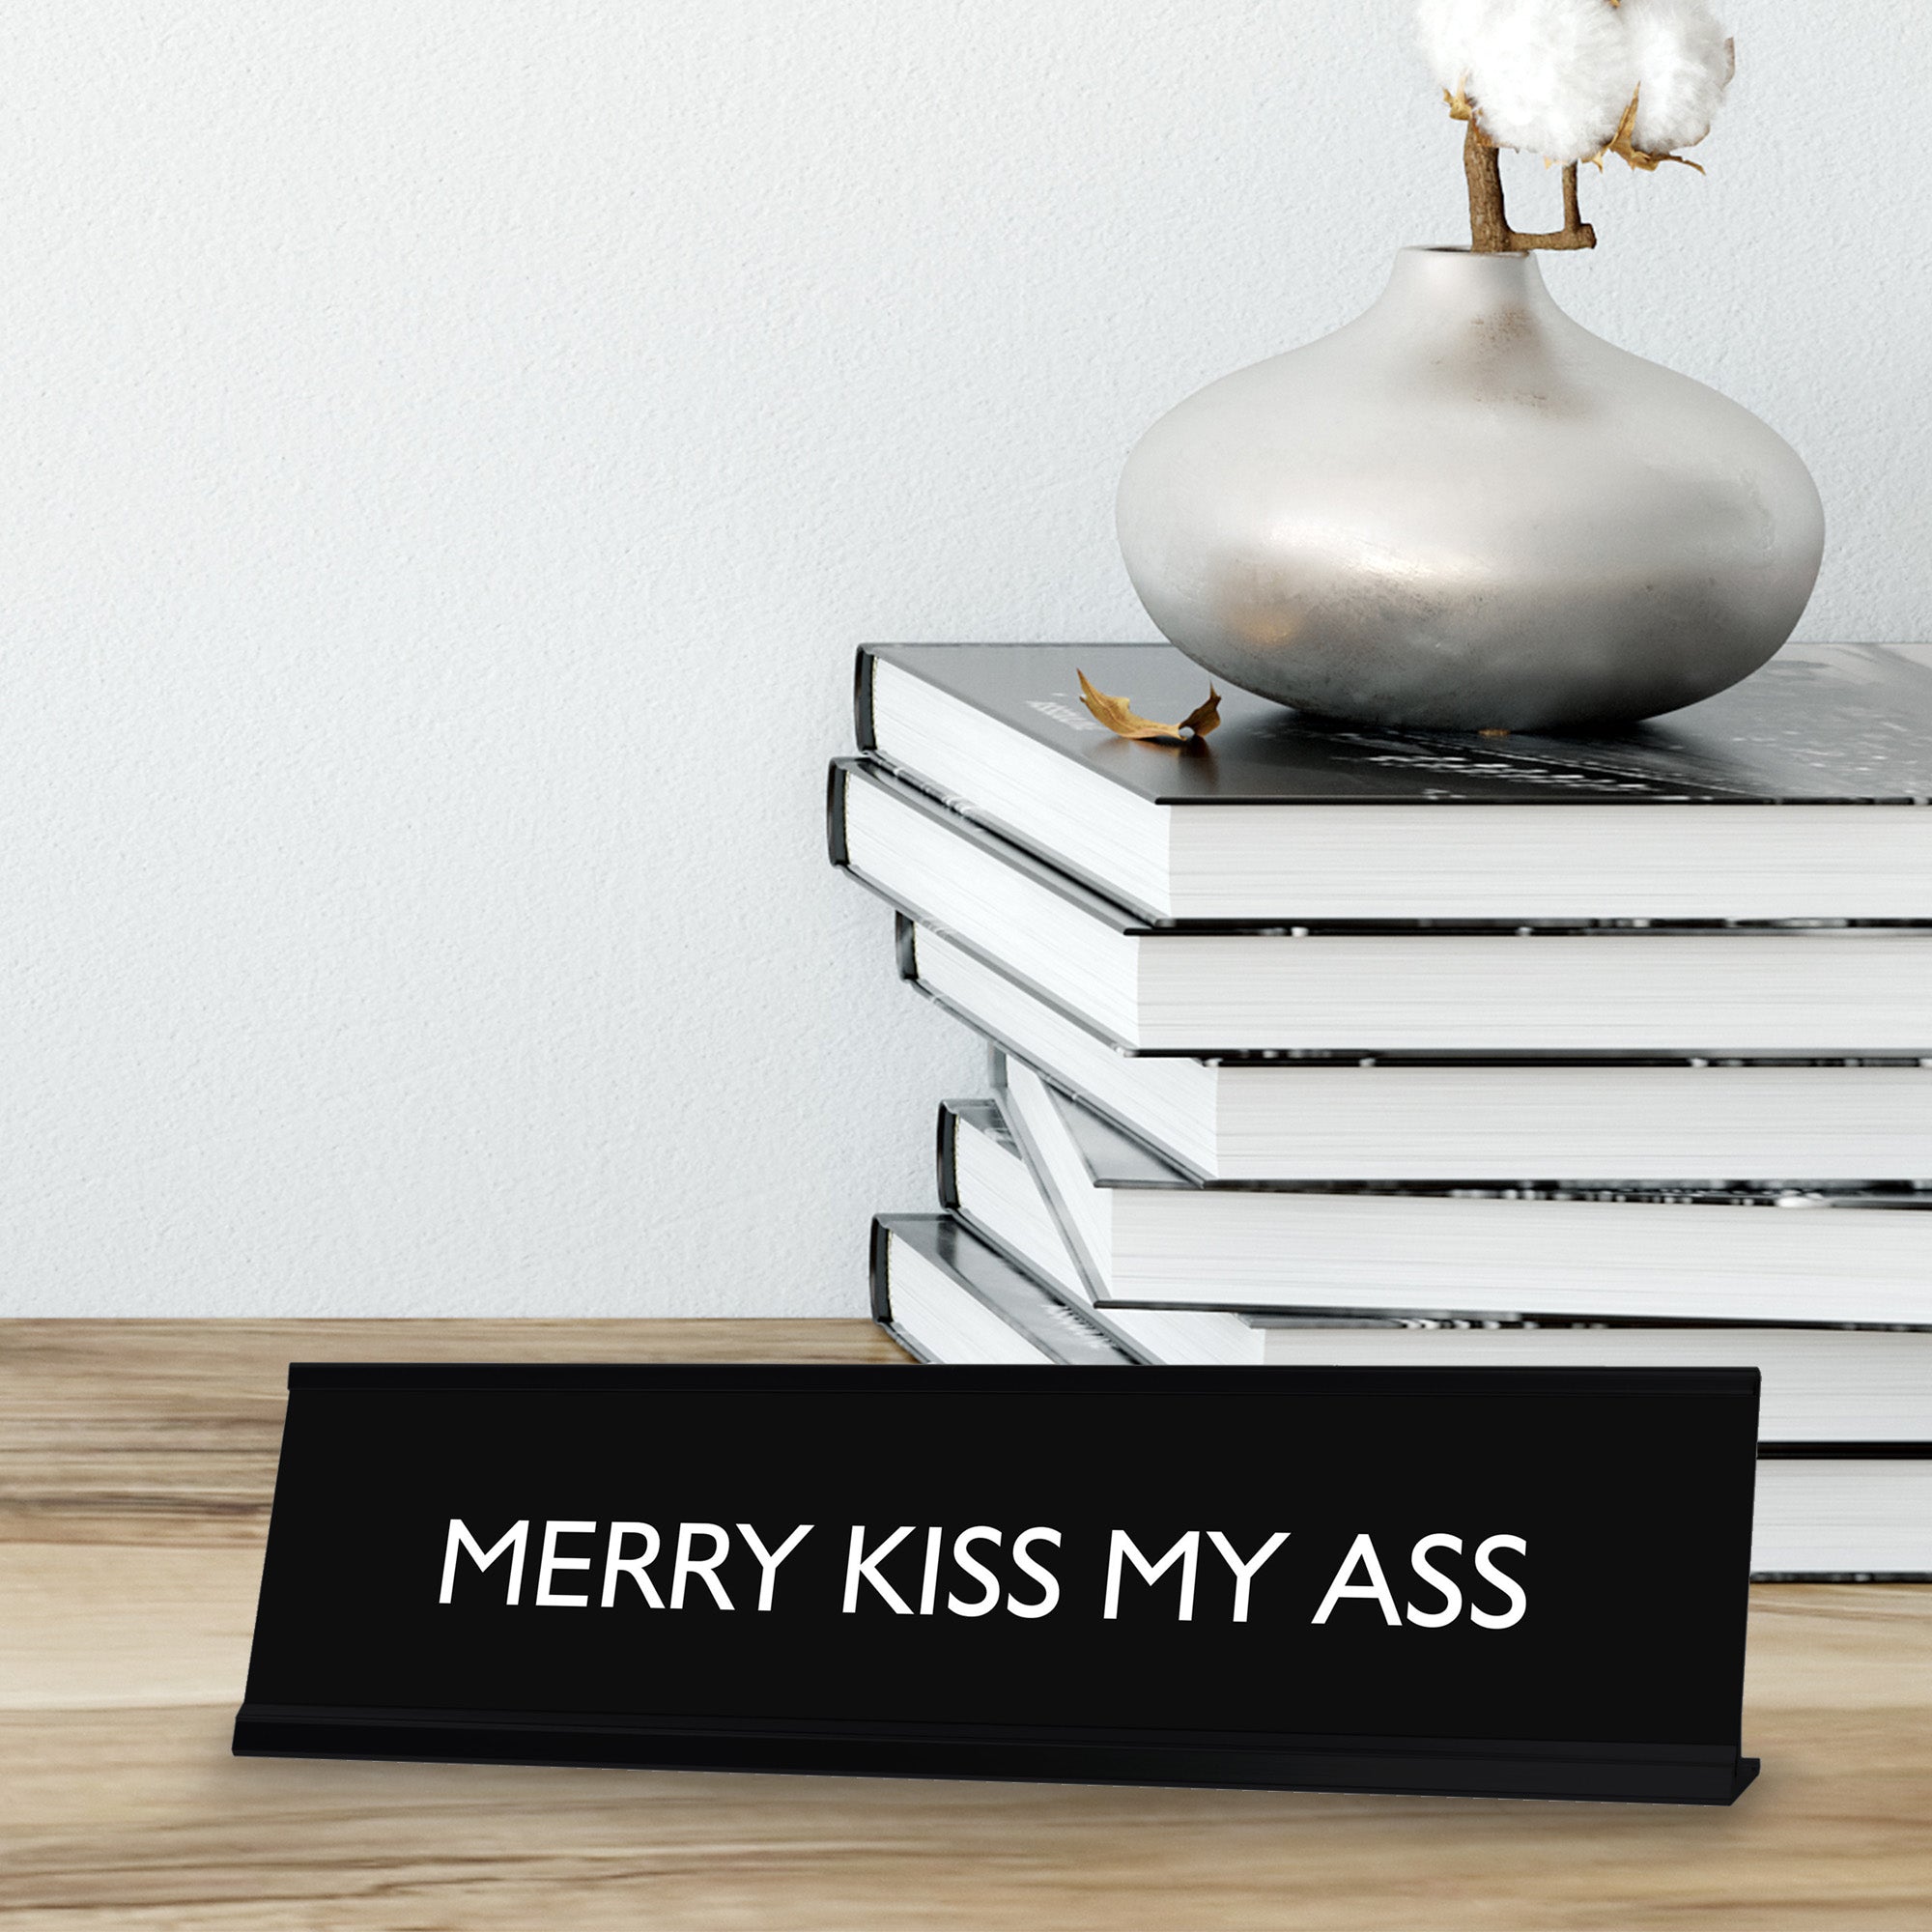 MERRY KISS MY ASS Novelty Desk Sign